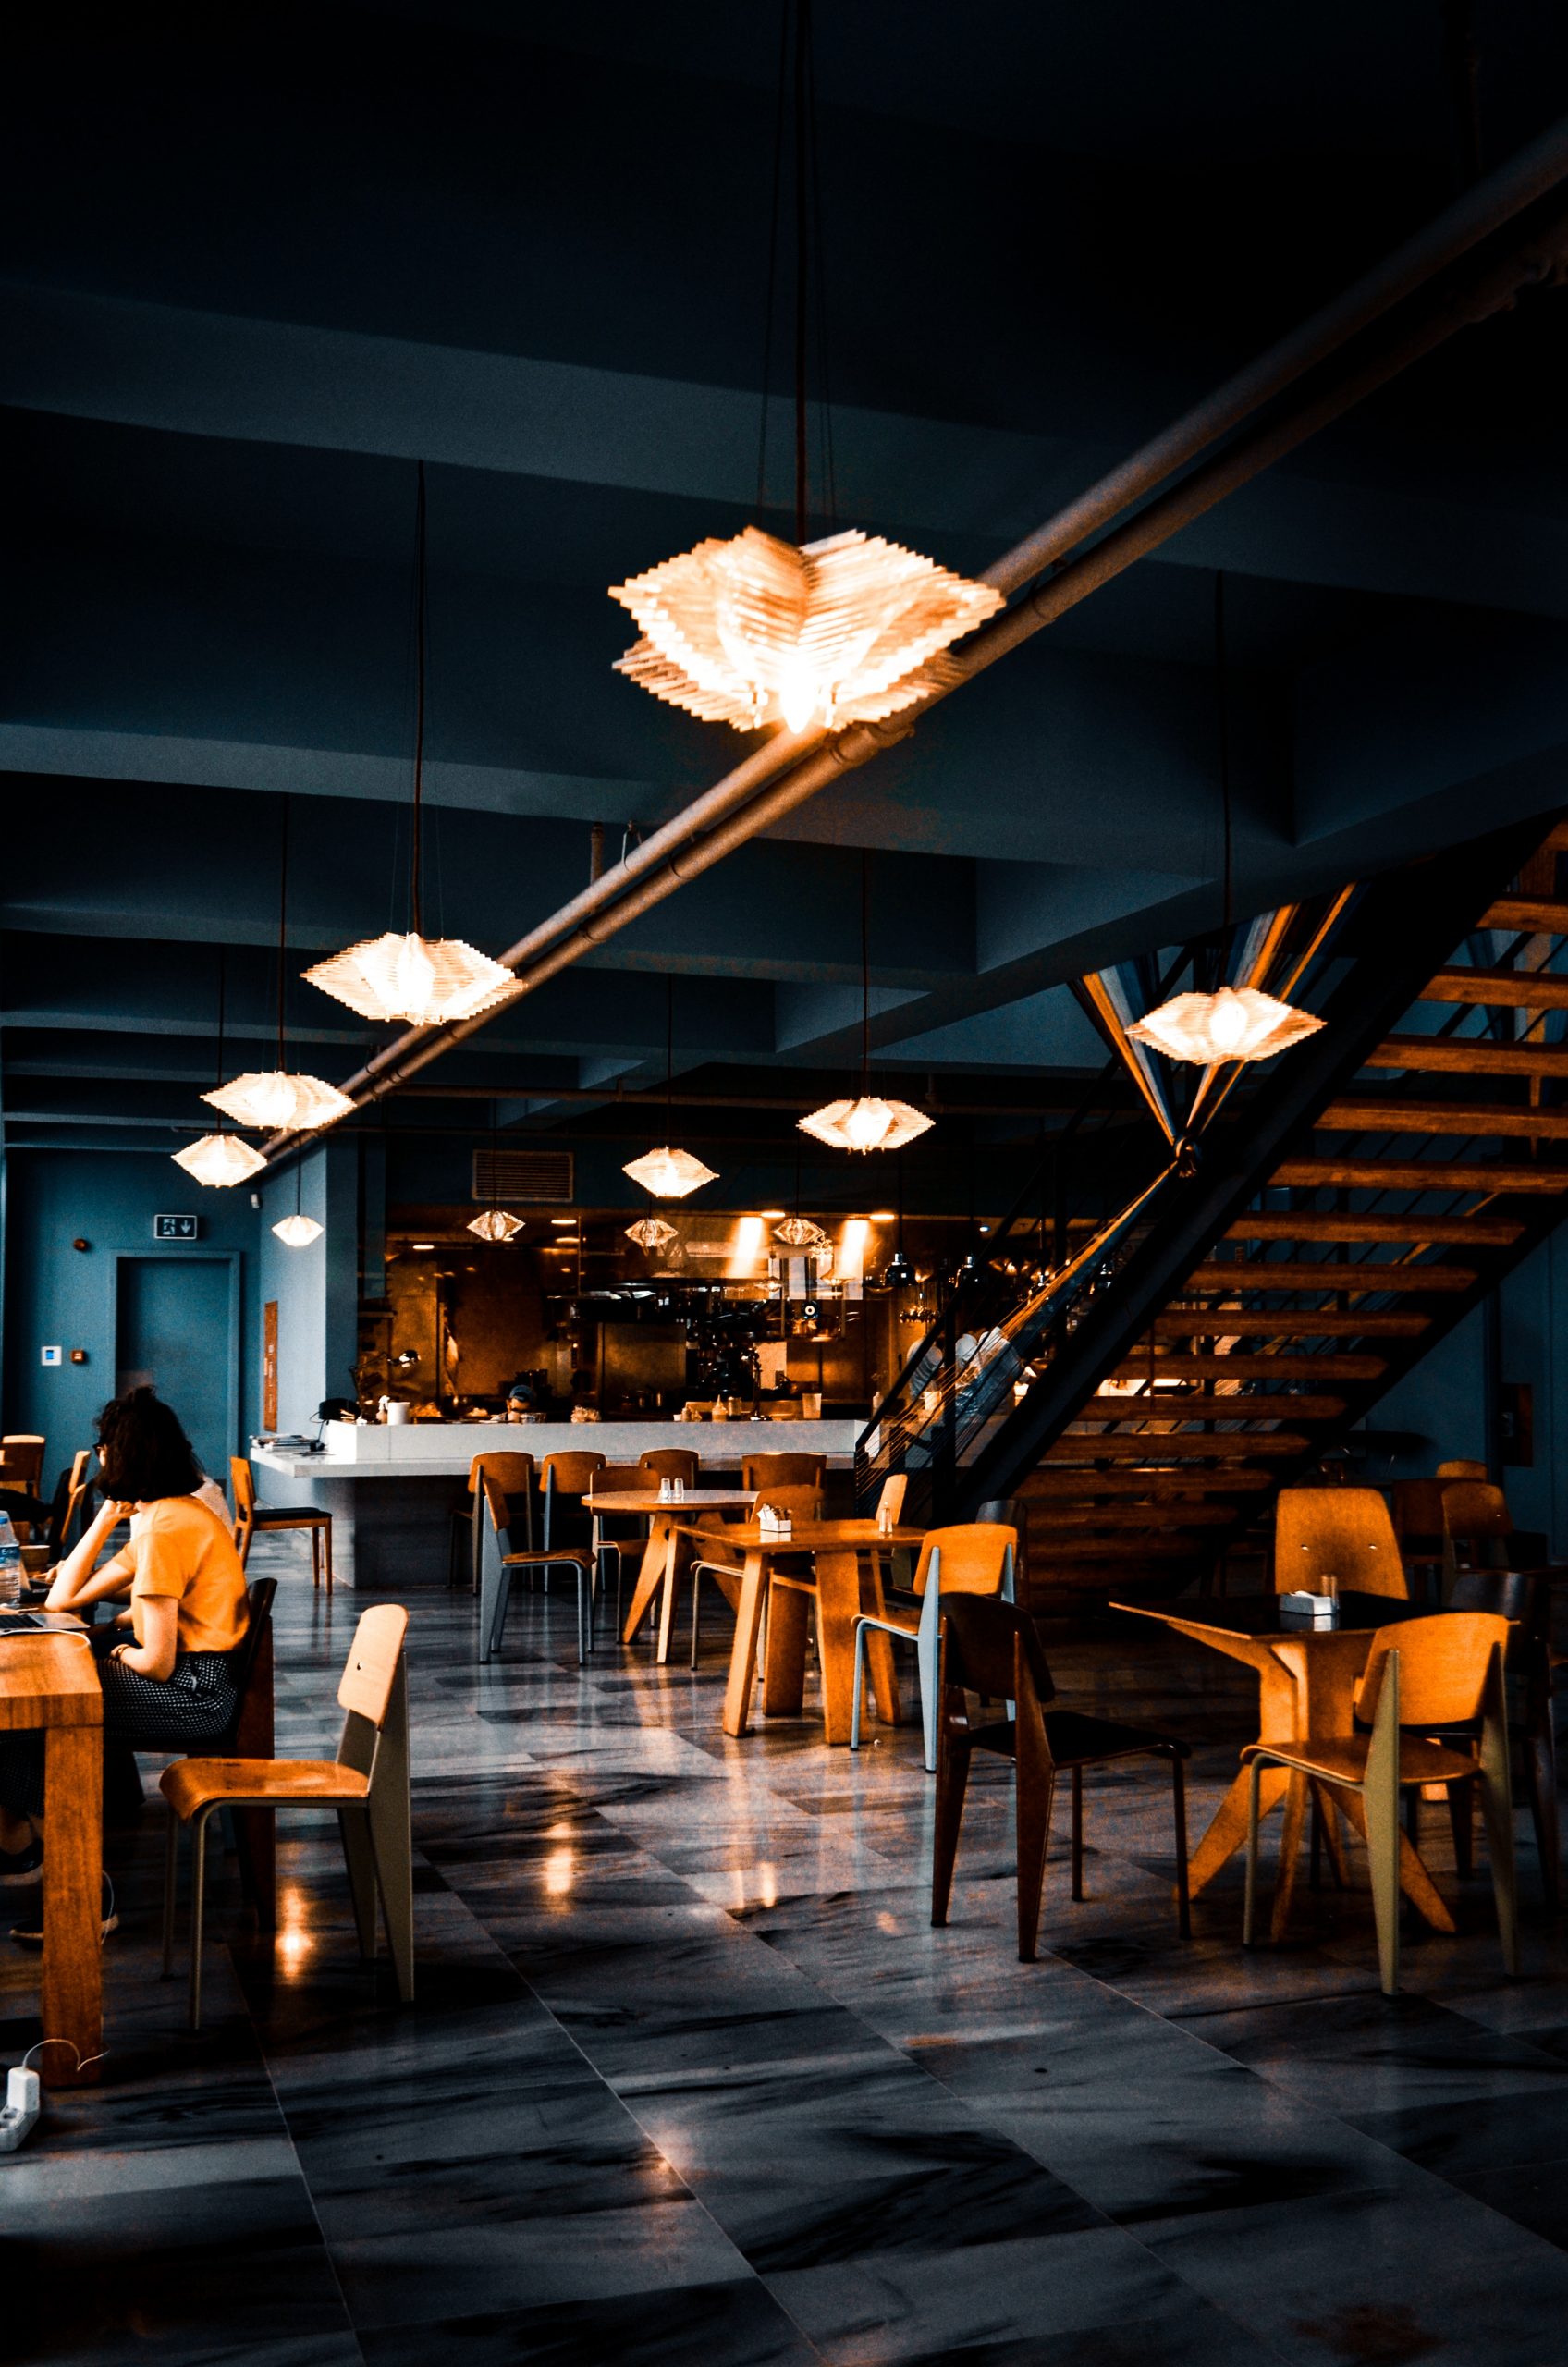 morden commerical cafe design dark blue